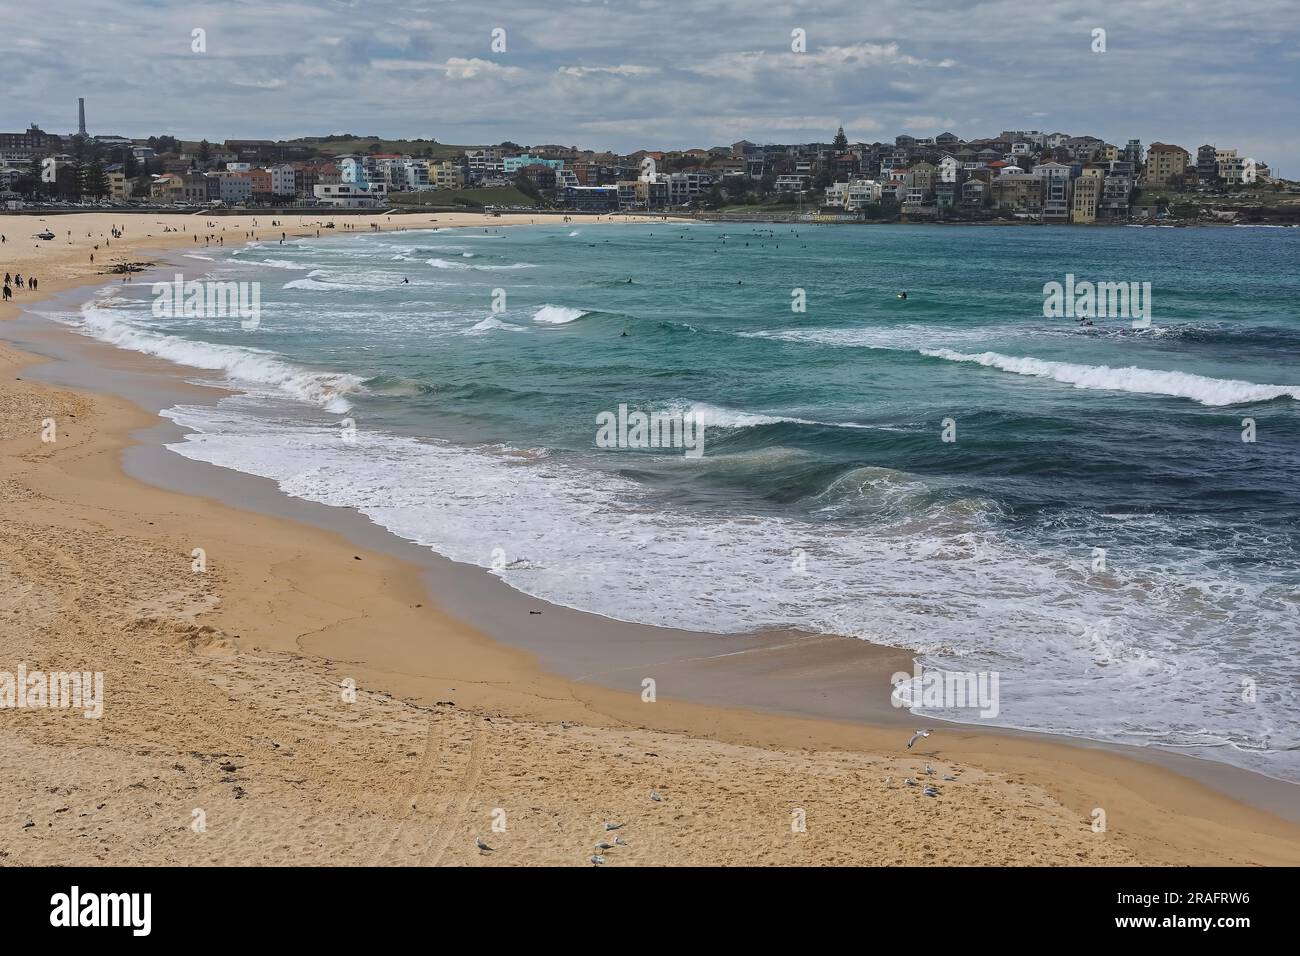 722 touristes et amateurs de plage marchent le long de Bondi Beach tandis que certains surfeurs essaient de surfer sur les vagues. Sydney-Australie. Banque D'Images